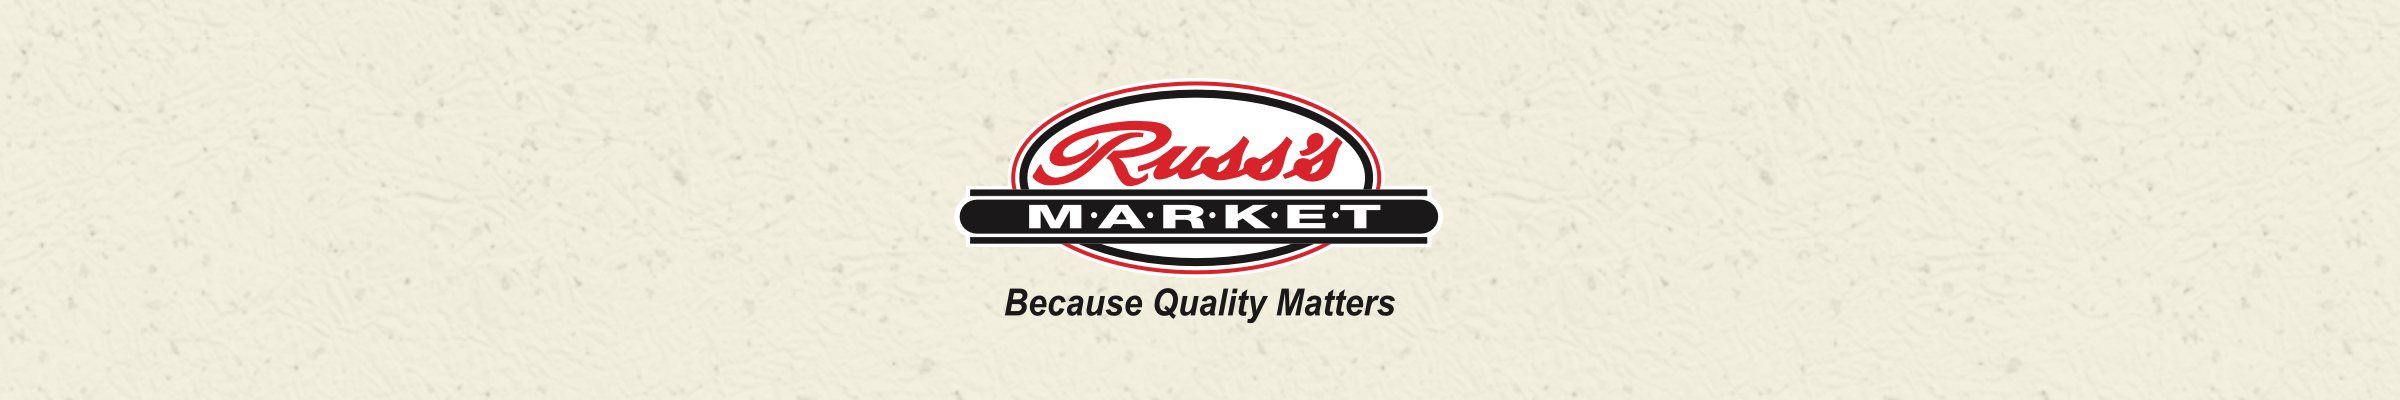 Russ's Market - Washington